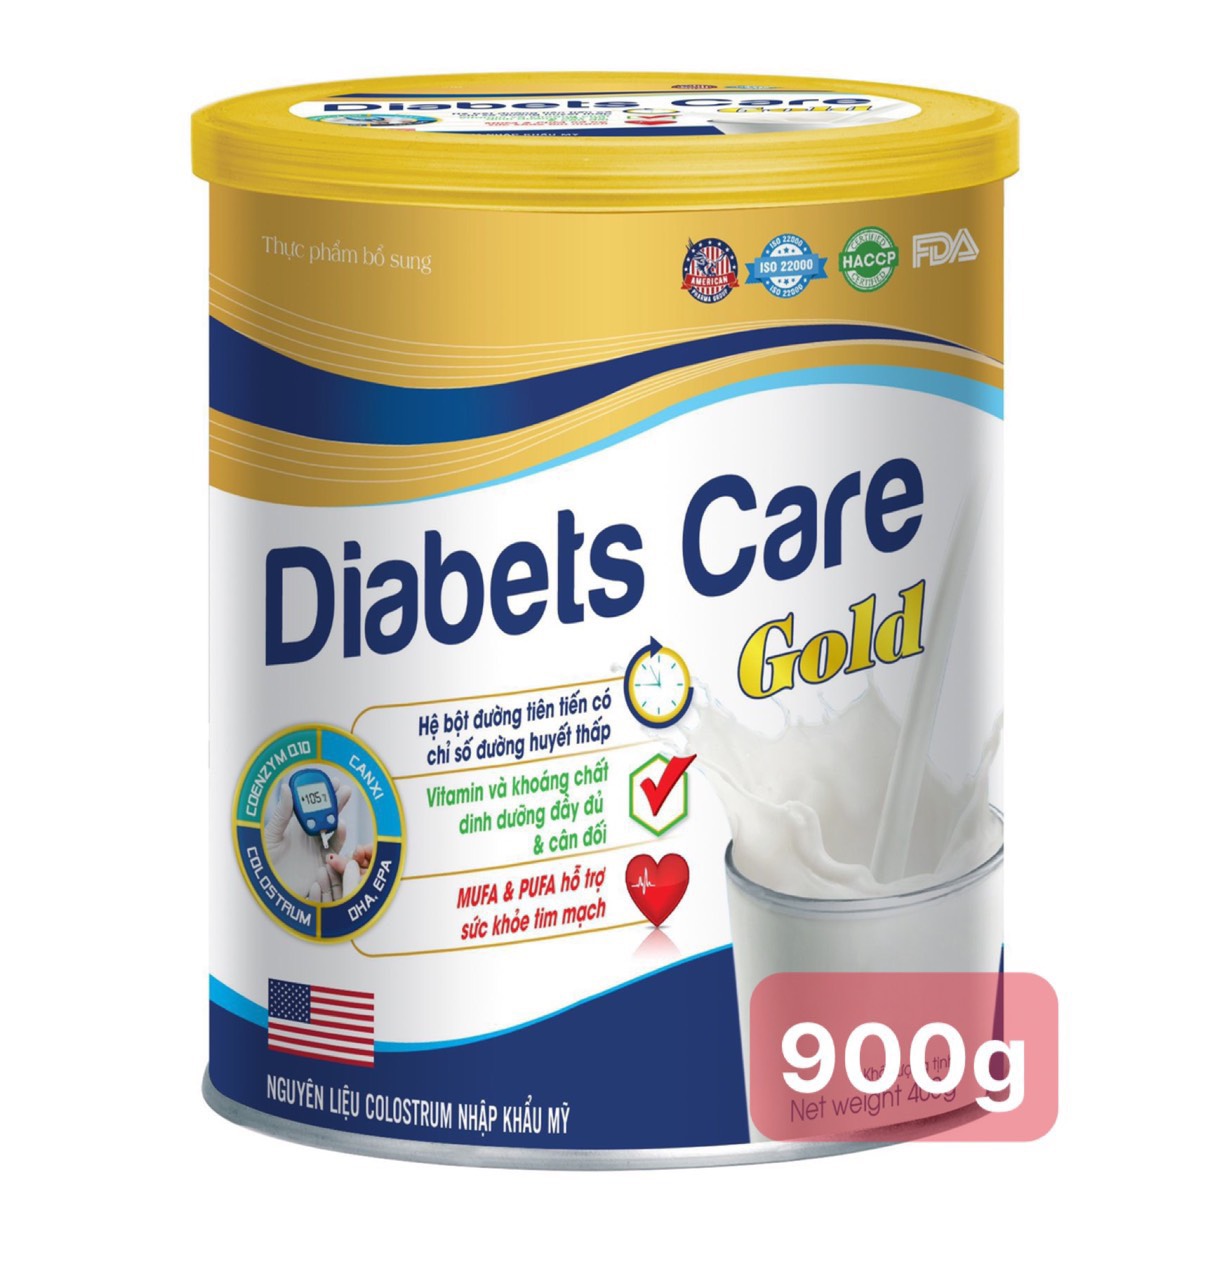 [Hộp 900g] Sữa Tiểu Đường Diabests Care Gold –Bổ Sung Vitamin Và Khoáng Chất Giúp Tăng Cường Sức Đề Kháng Hệ Tiêu Hóa Khỏe Mạnh Giảm Giảm Đường Huyết Khỏe Tim Mạch - T&T Pharma